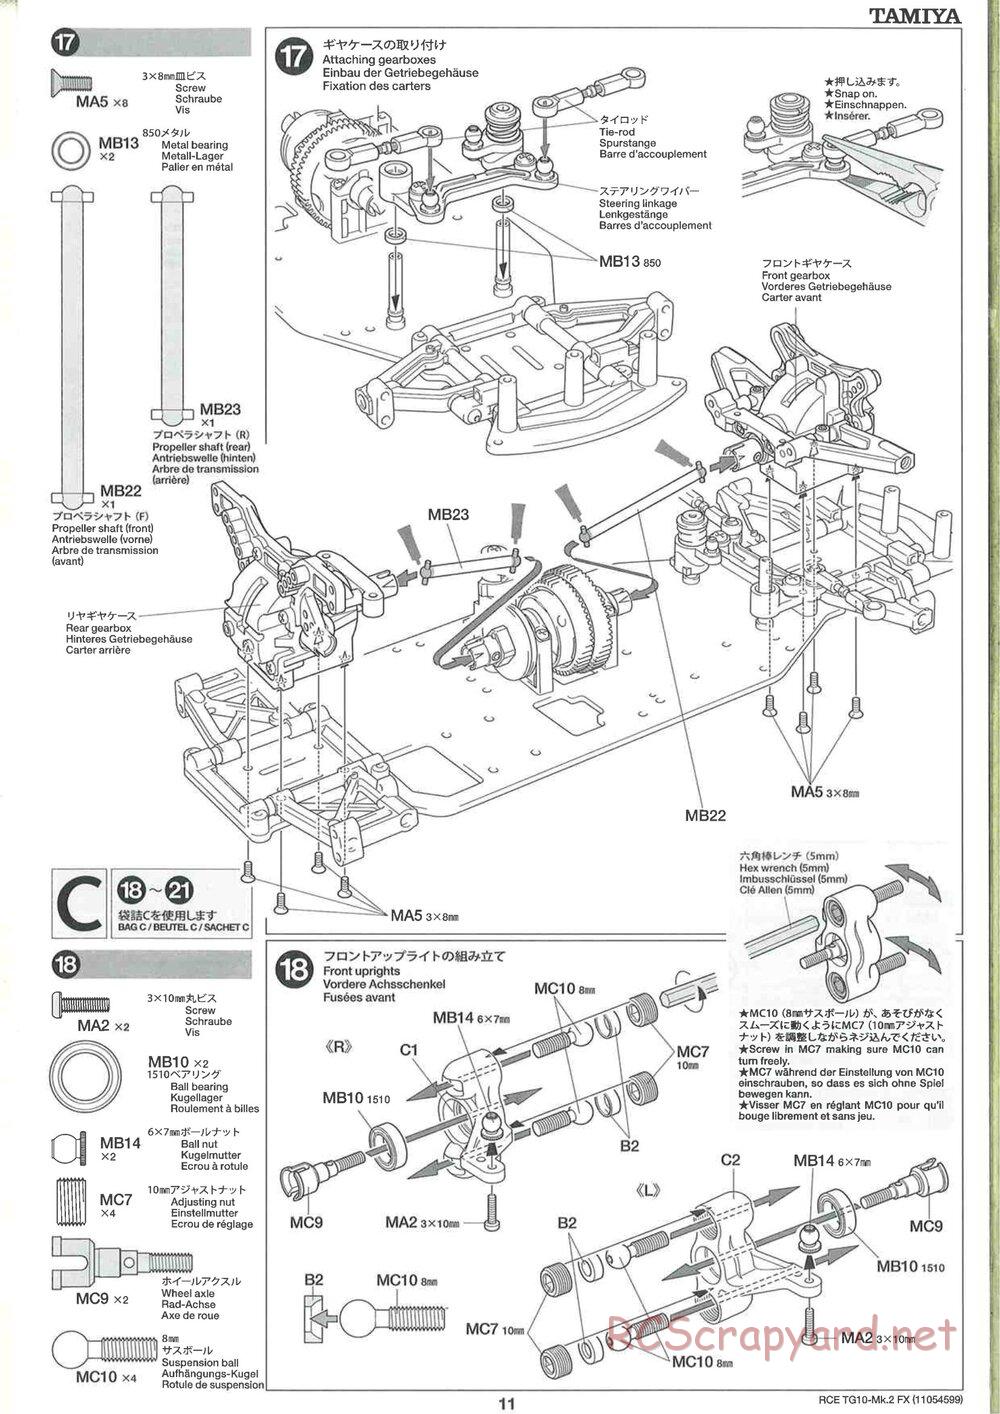 Tamiya - TG10 Mk.2 FX Chassis - Manual - Page 11